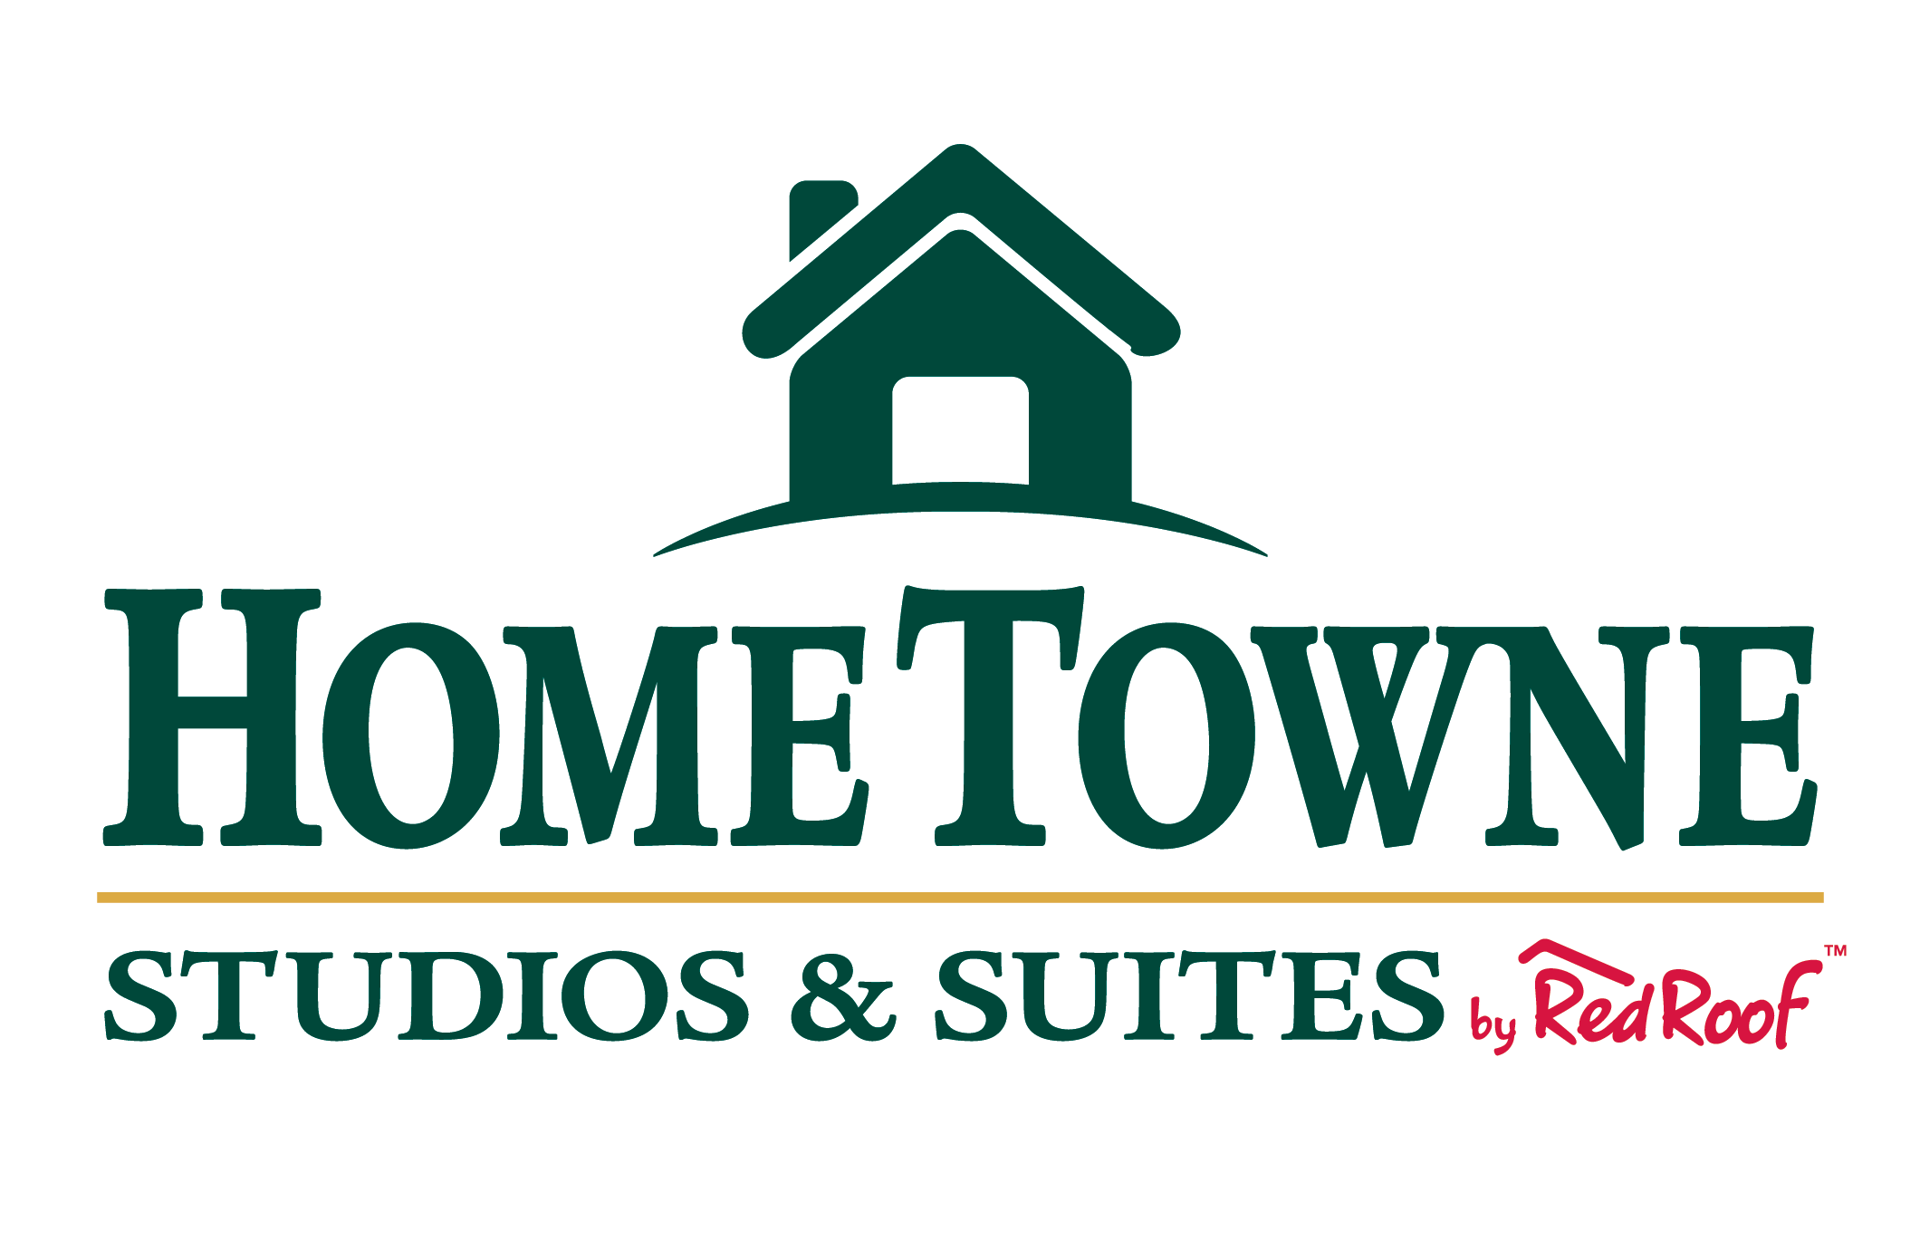 Home Towne Studios